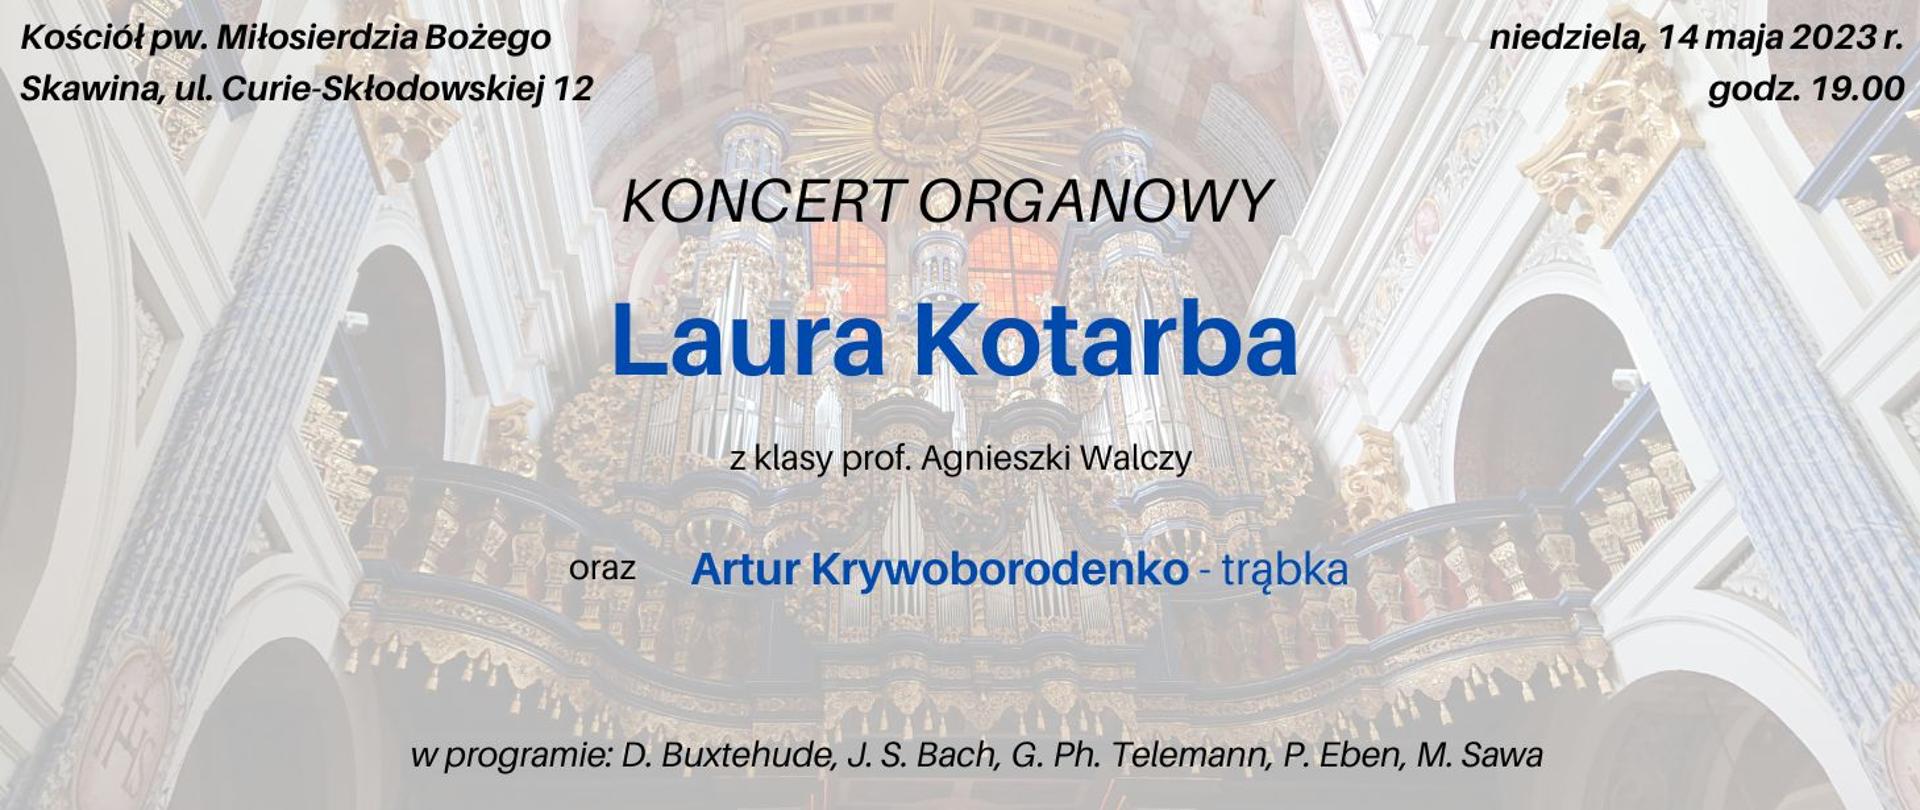 na tle kościoła napis koncert organowy Laura Kotarba z klasy prof. Agnieszki Walczy 14.05.2023